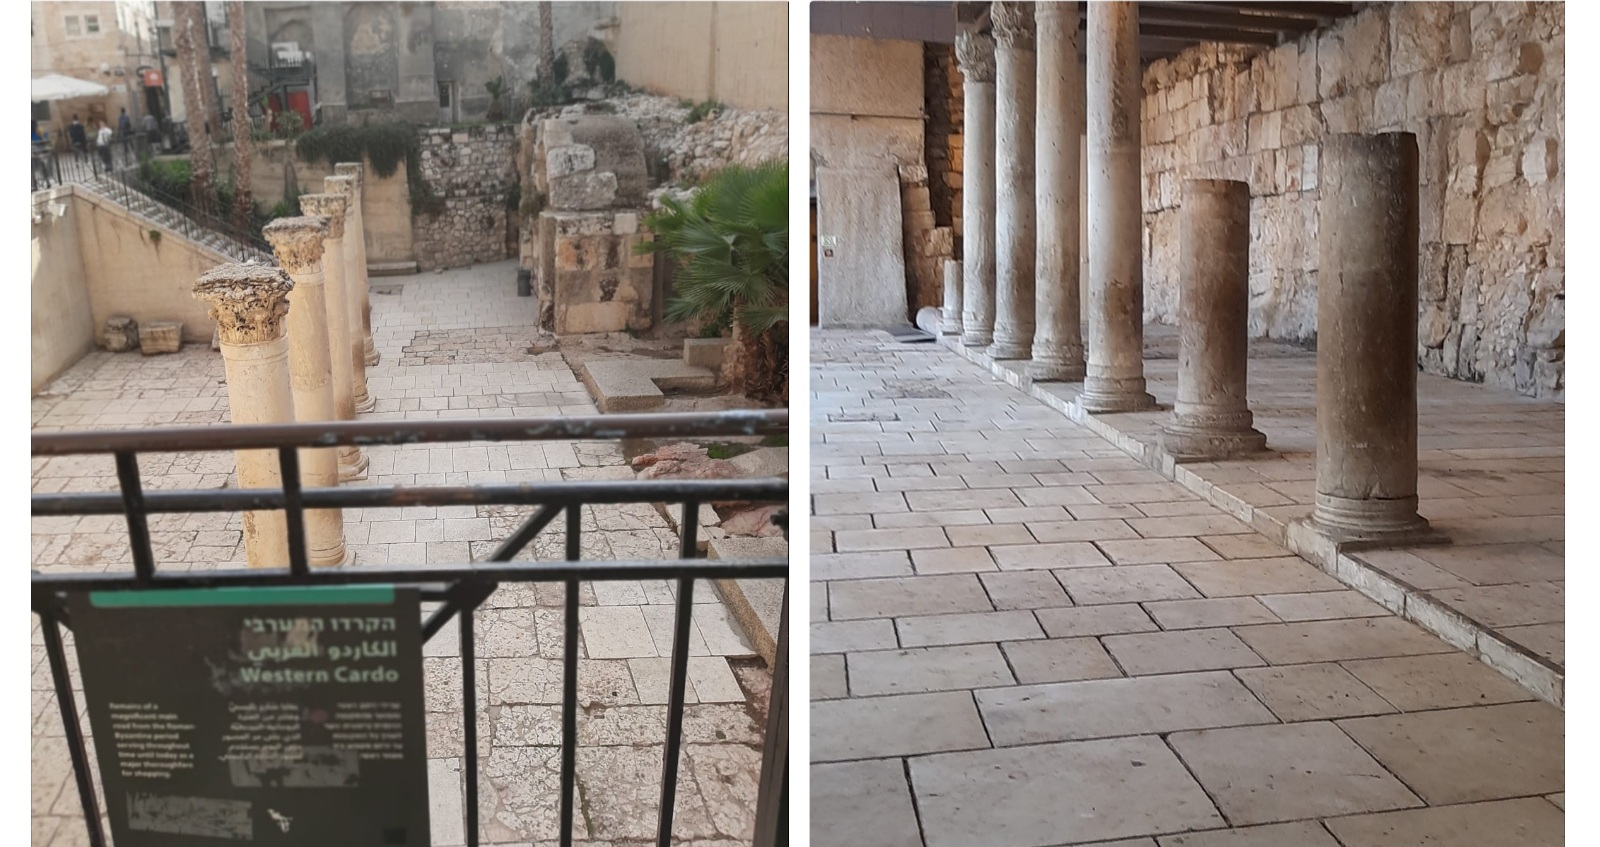 דו"ח הנדסי הצביע על סכנת קריסה מיידית – משרד ירושלים ומורשת הקצה 2.5 מיליון שקלים להצלת הקארדו בעיר העתיקה